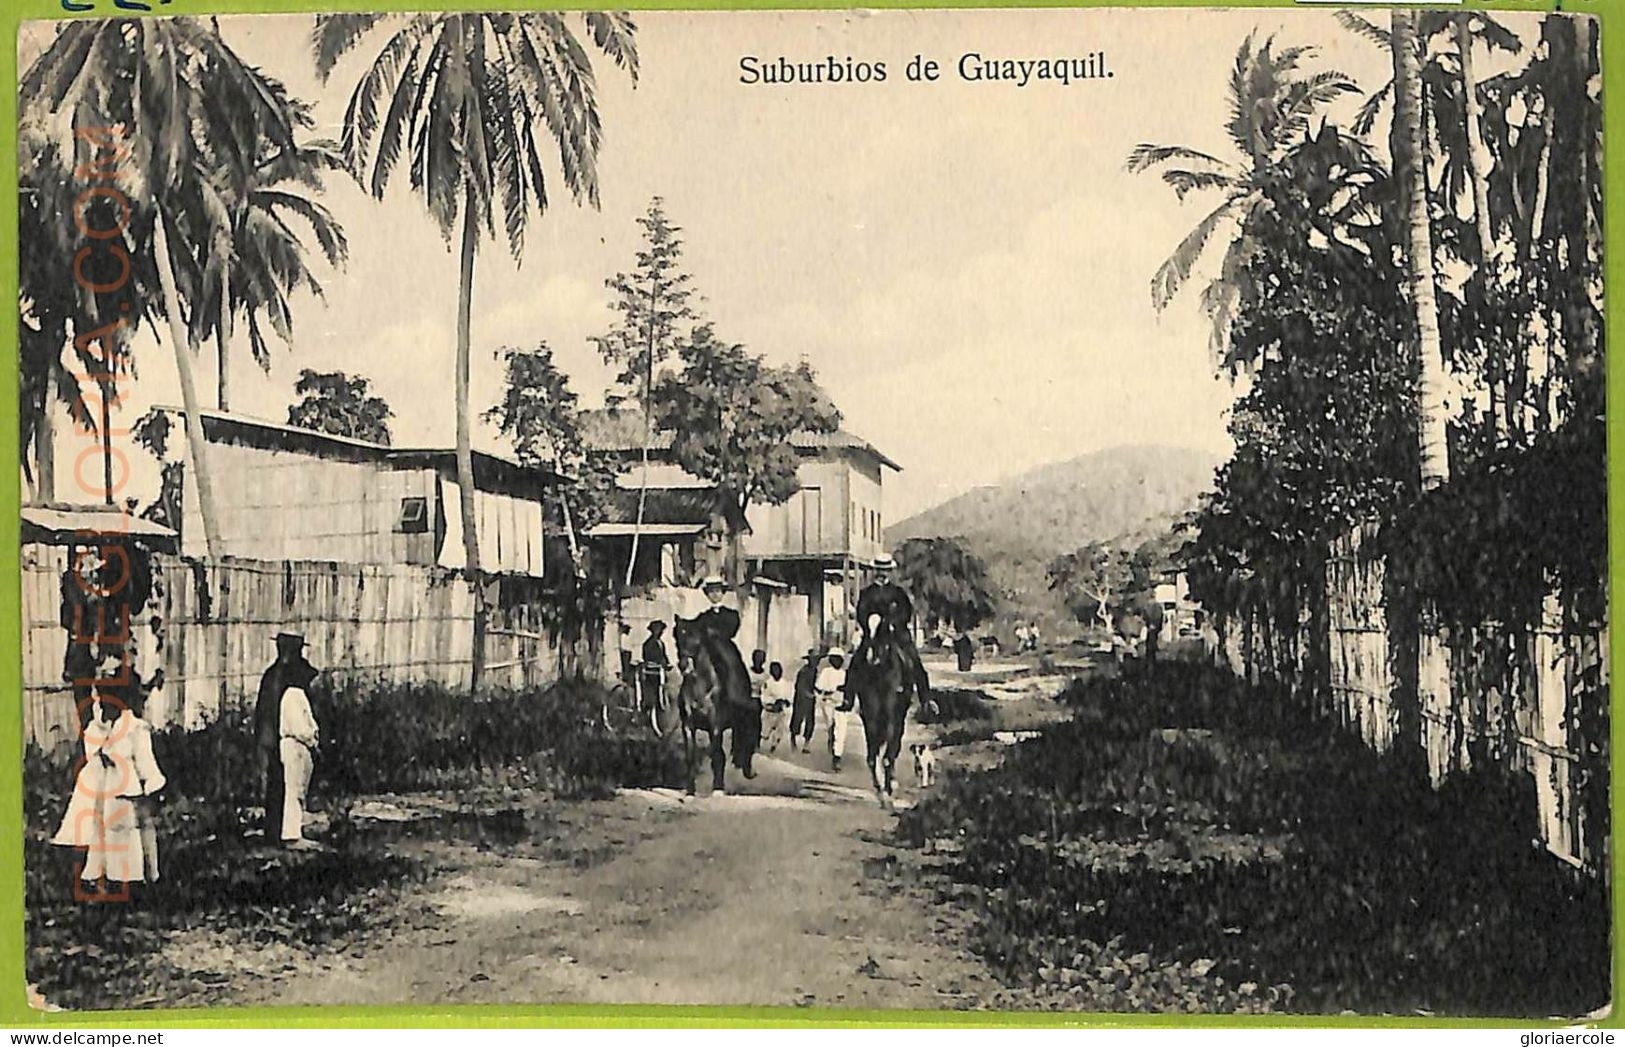 Af2358 - ECUADOR - Vintage Postcard - Guayaquil - Text - Ecuador